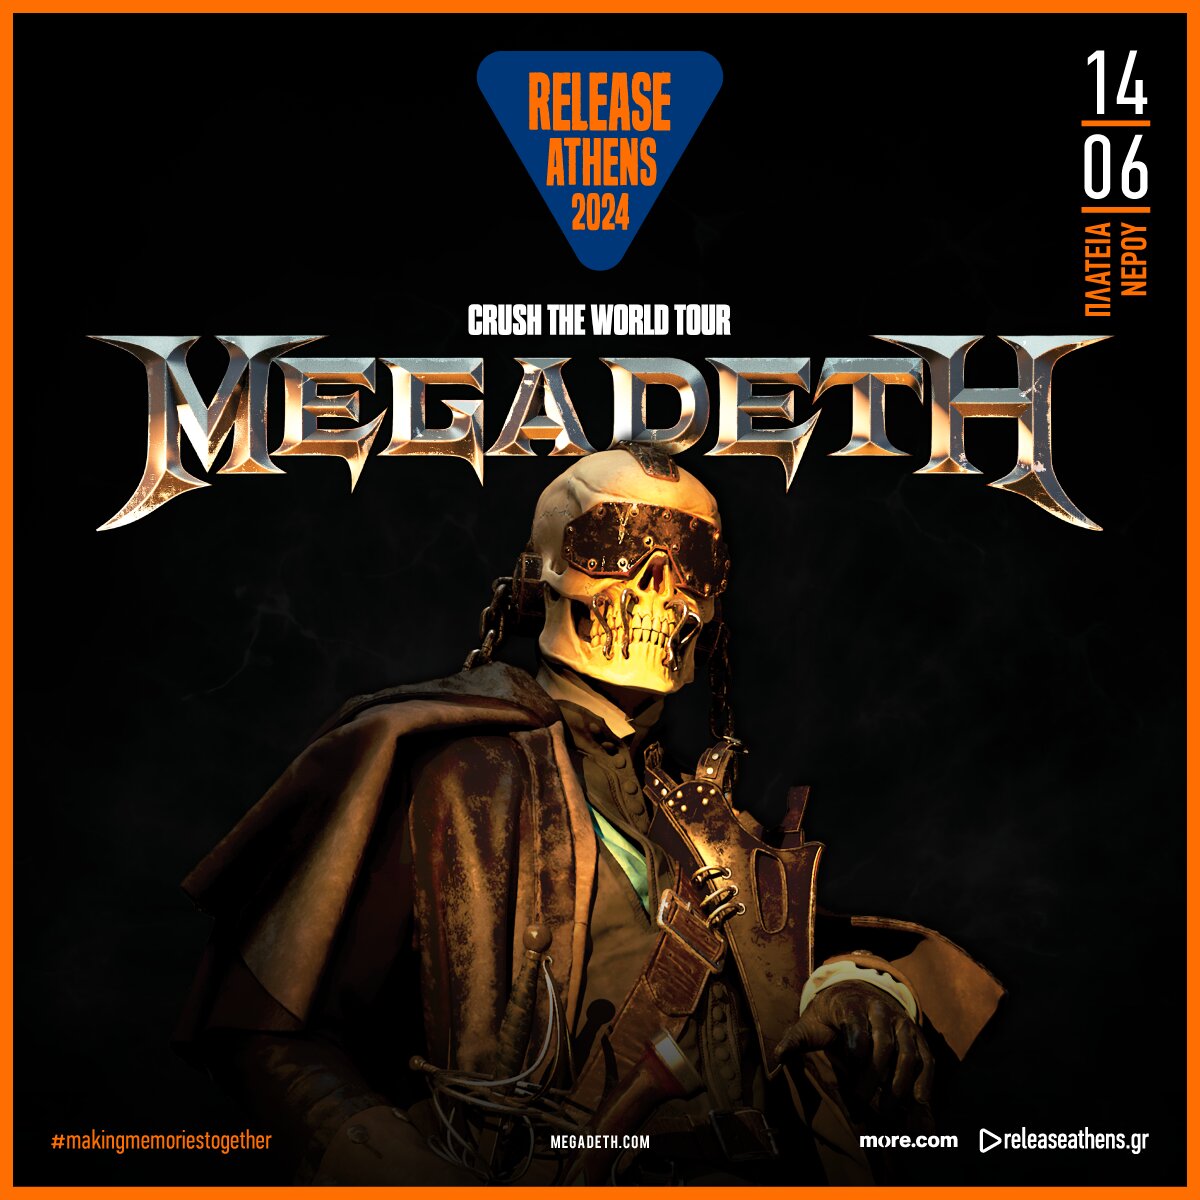 RAF24 Megadeth socials post